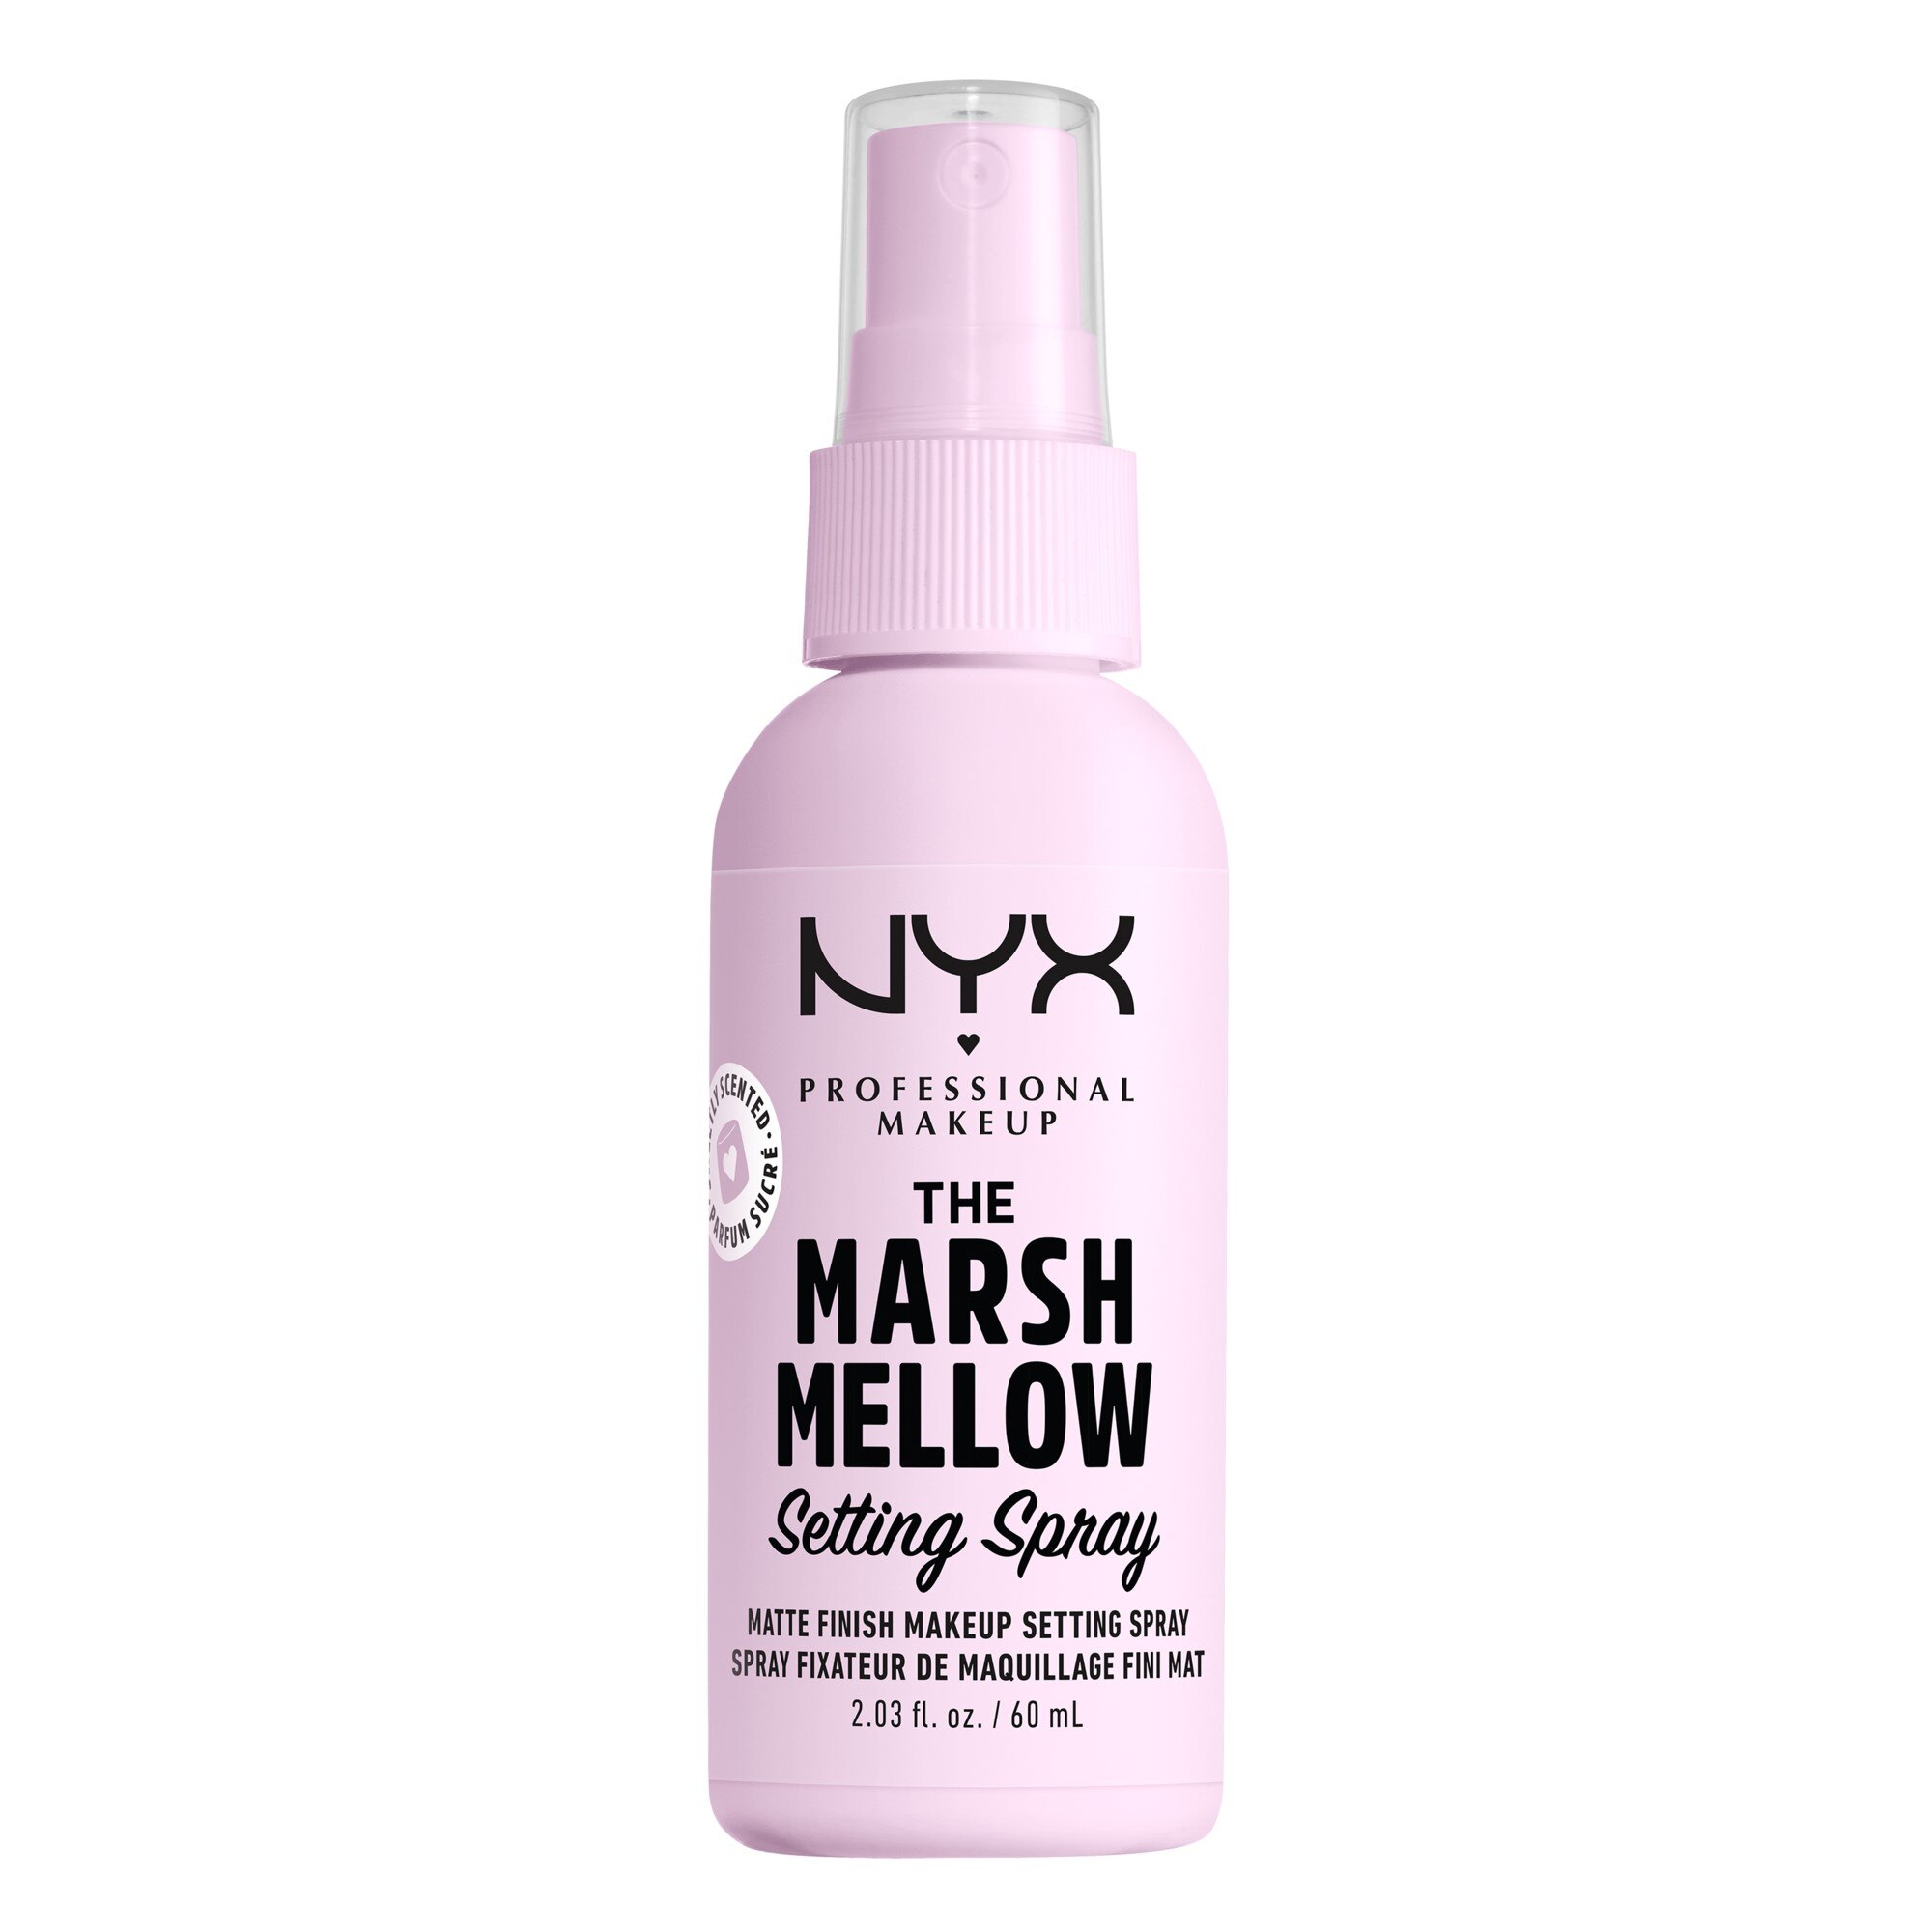 NYX Professional Makeup Pro Tools Marshmellow Setting Spray, 2.03 fl oz